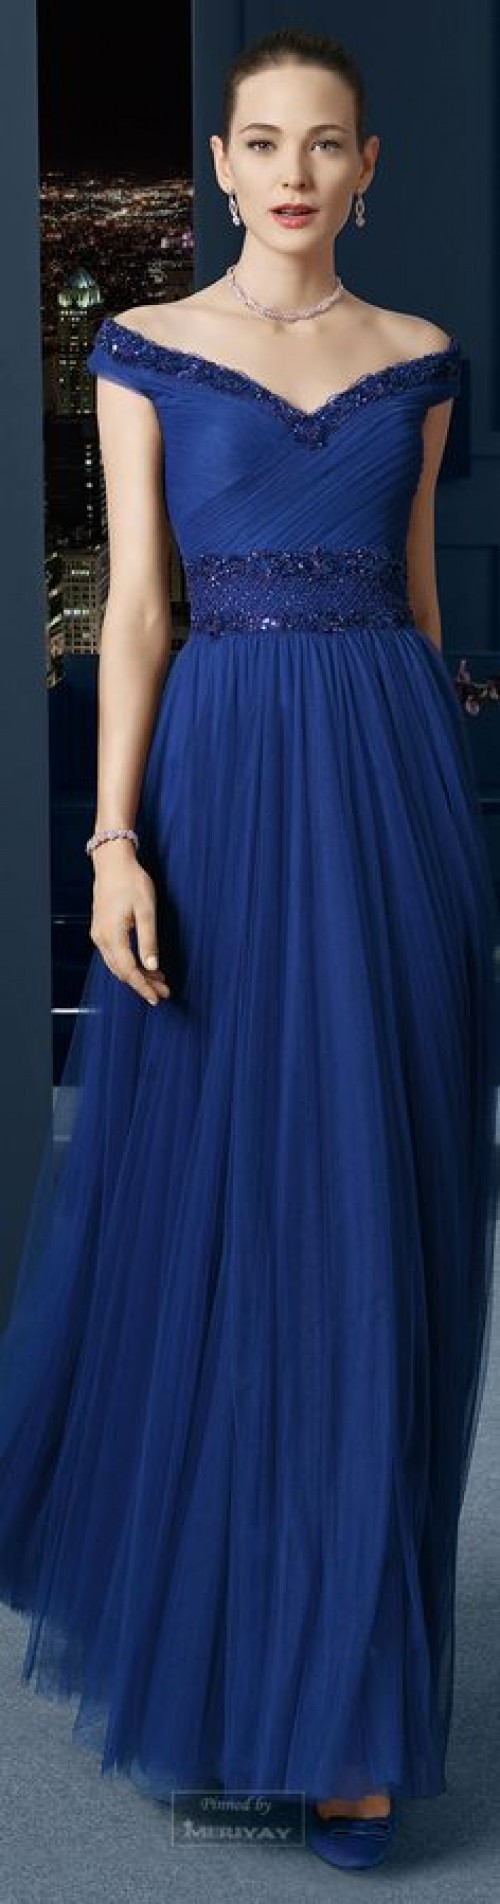 Đầm dạ hội màu xanh DH-024